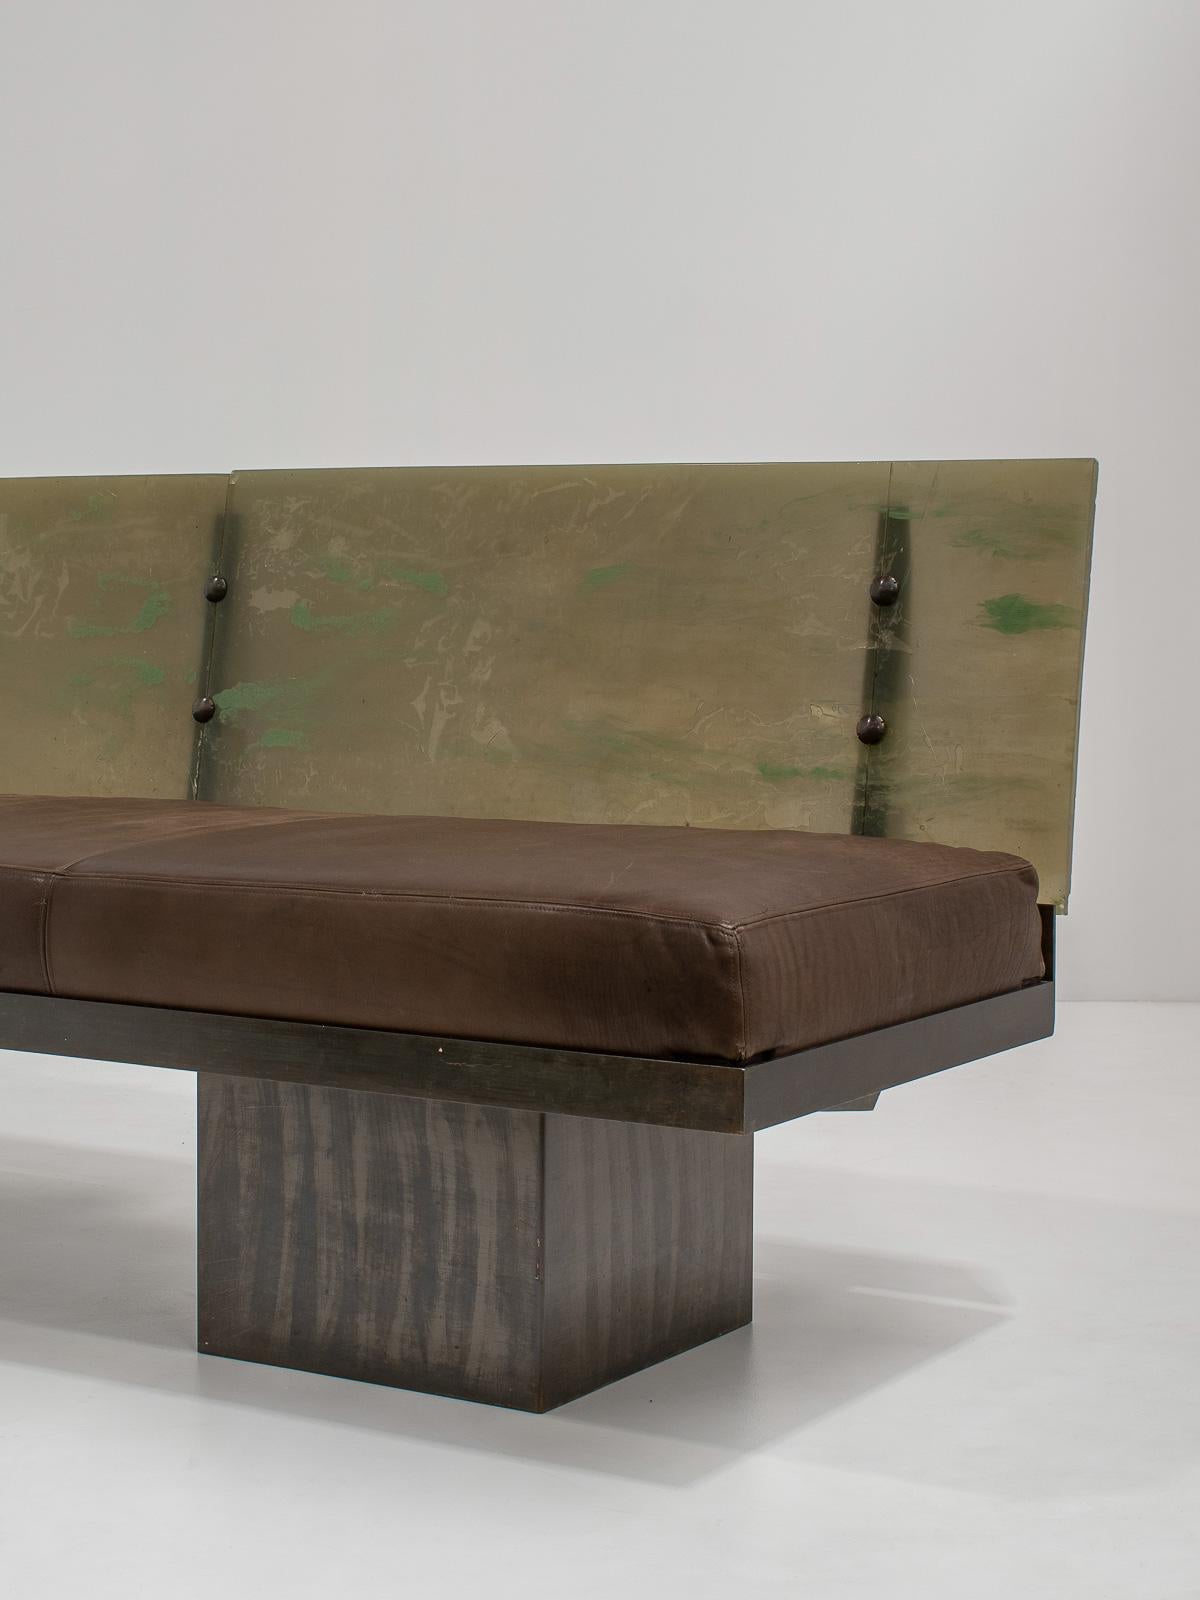 Sculptural Post-Modern Steel Sofa, France 1980s For Sale 4